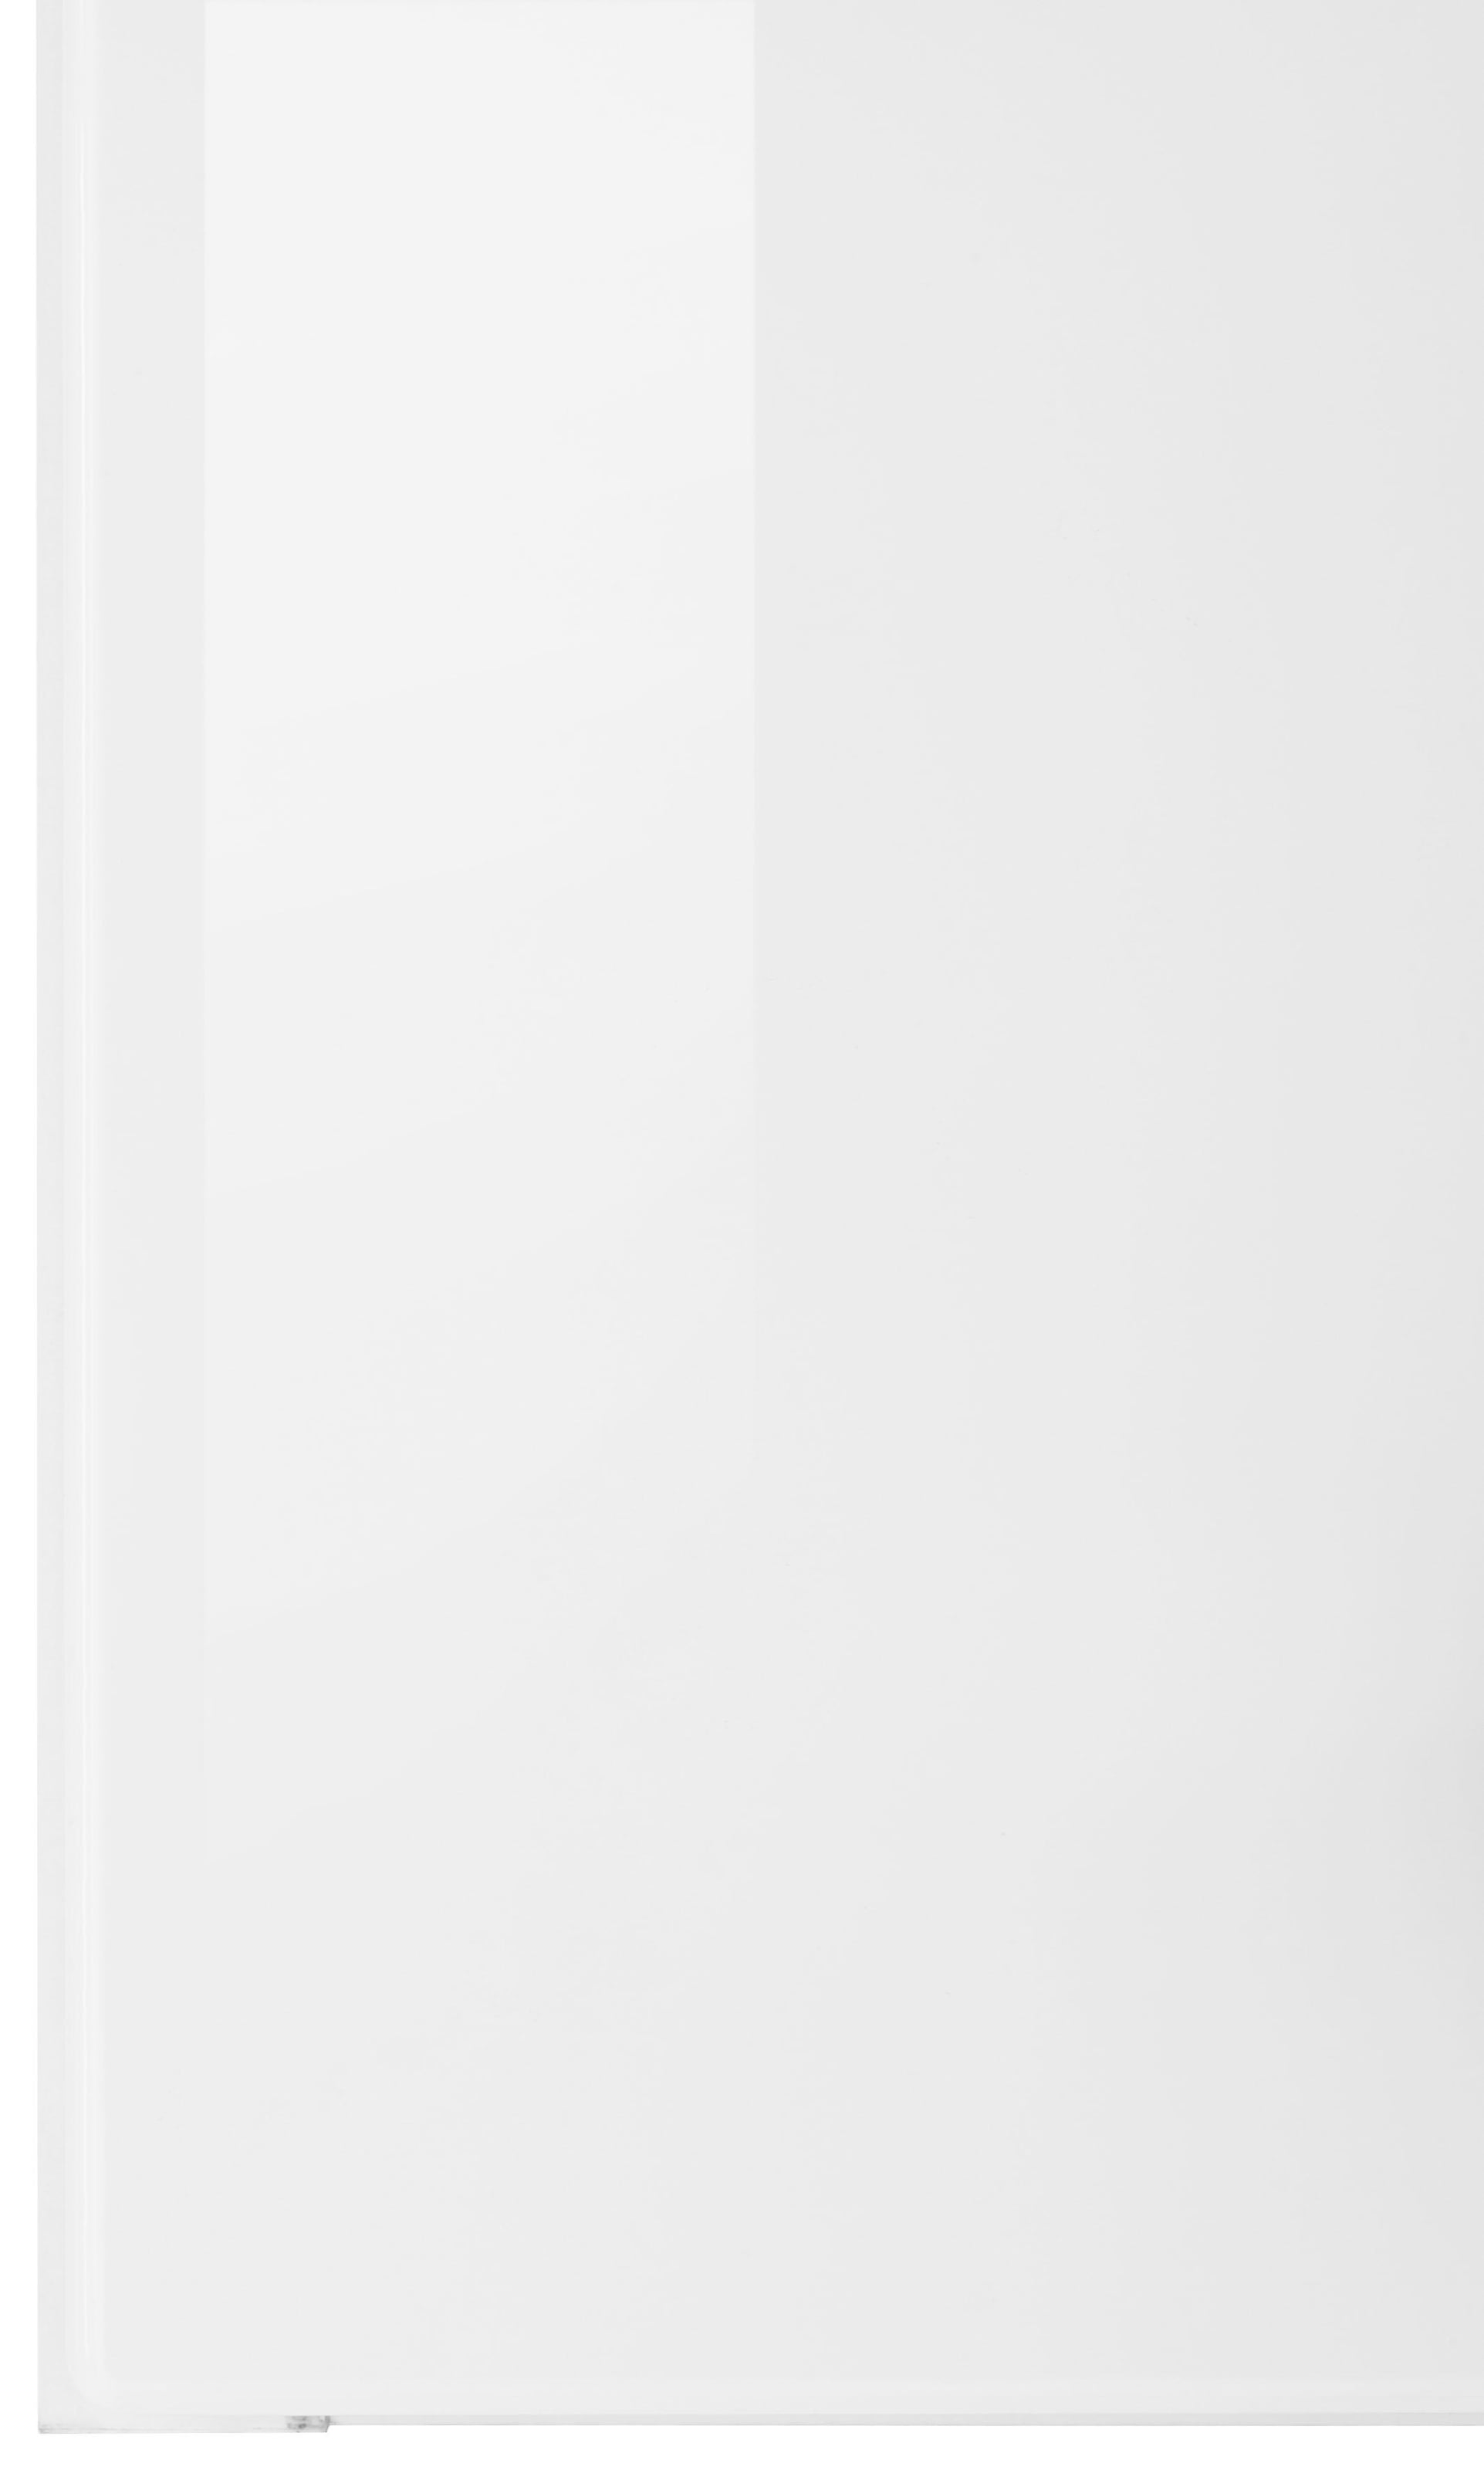 HELD MÖBEL Hängeschrank »Tulsa«, 100 cm breit, 57 cm hoch, 2 Türen, schwarzer Metallgriff, MDF Front